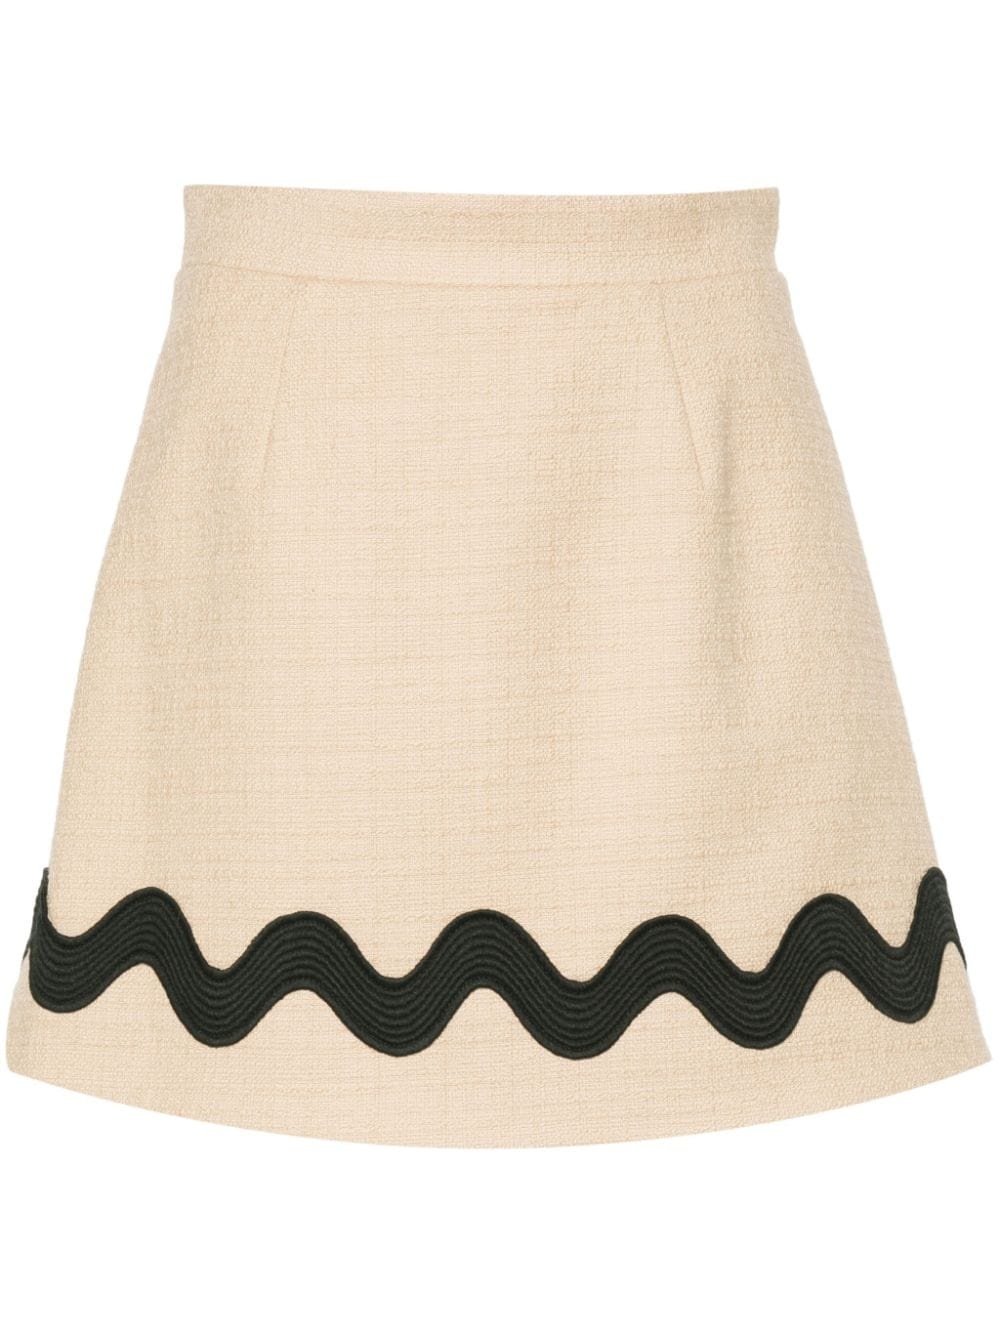 Iconic tweed mini skirt - 1